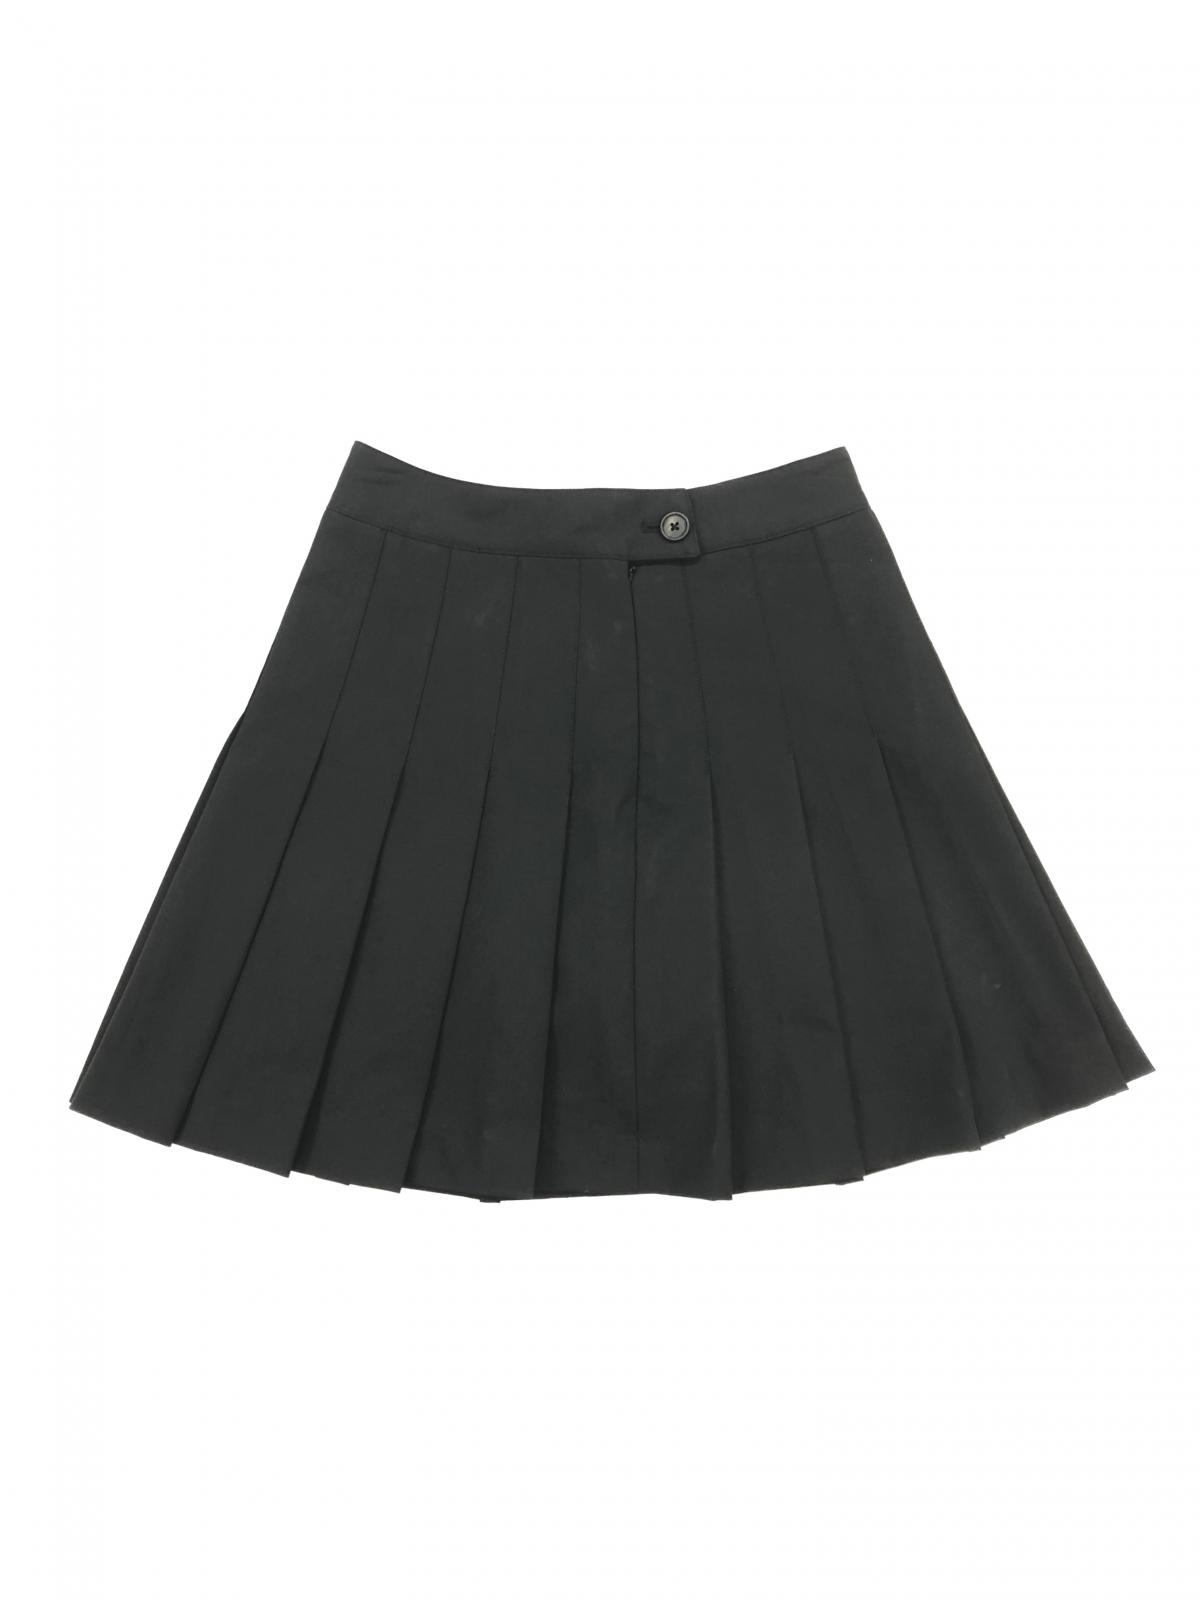 Women's skirts SK0001 #0